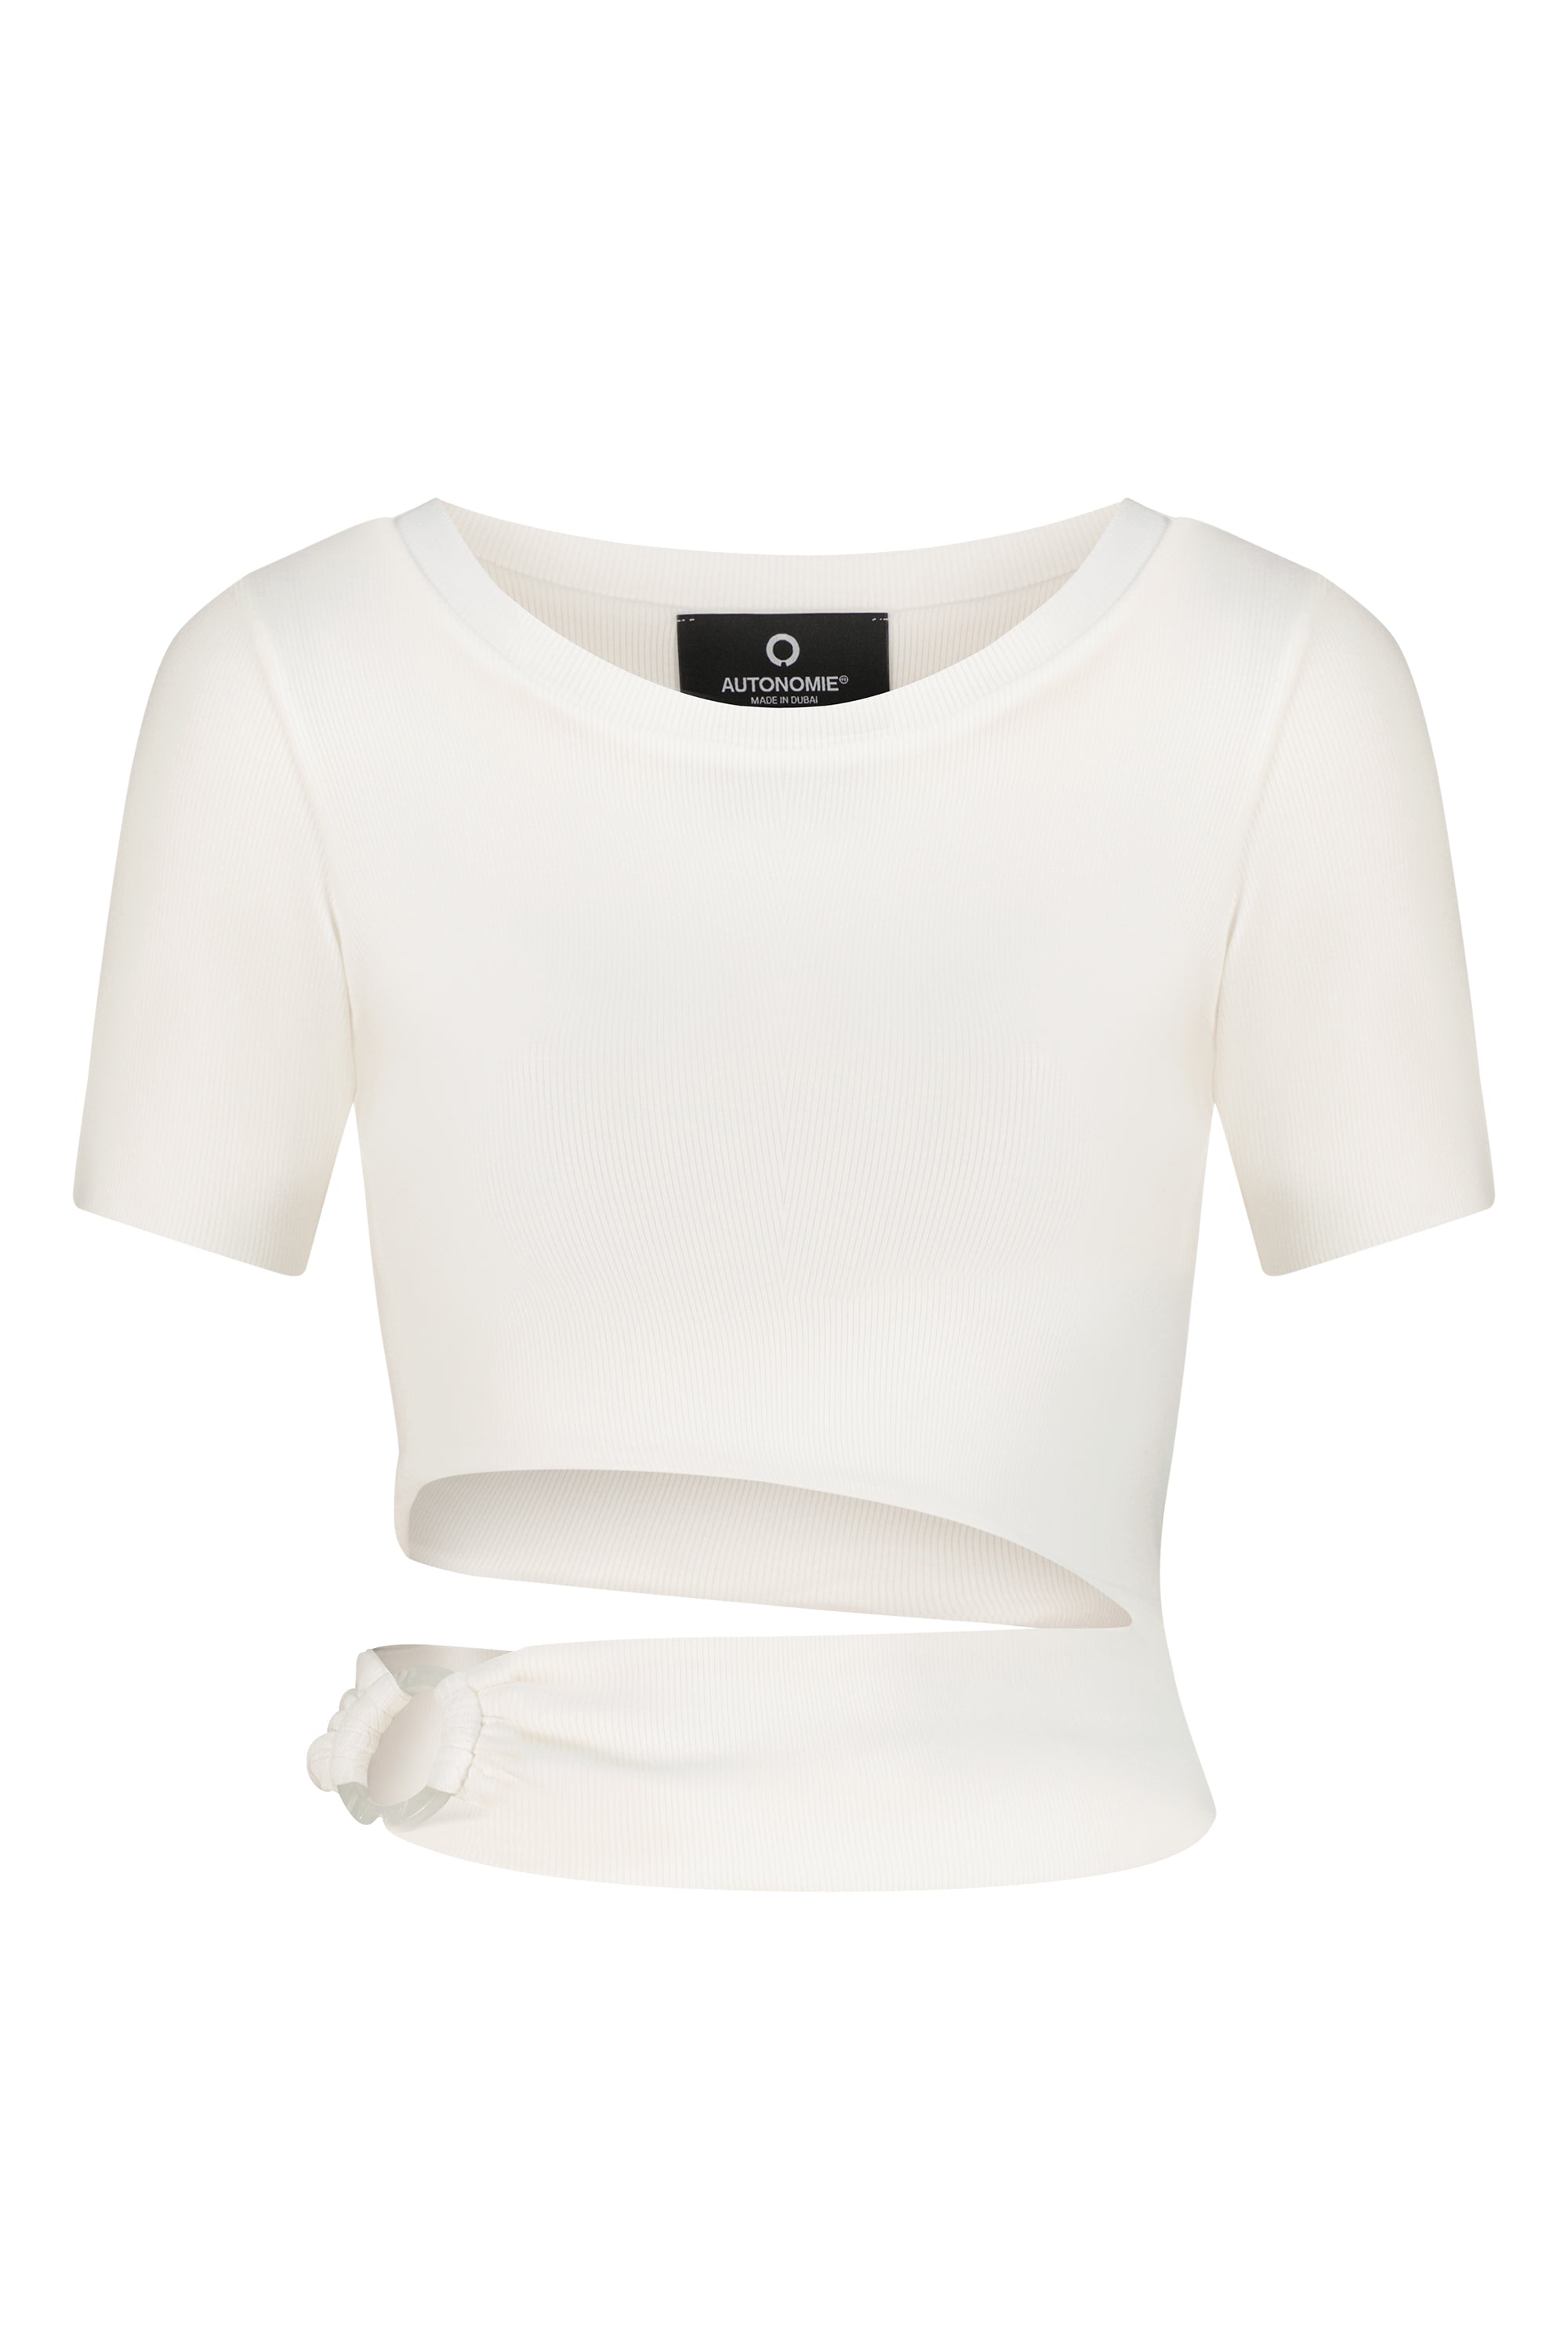 Athena T-Shirt White